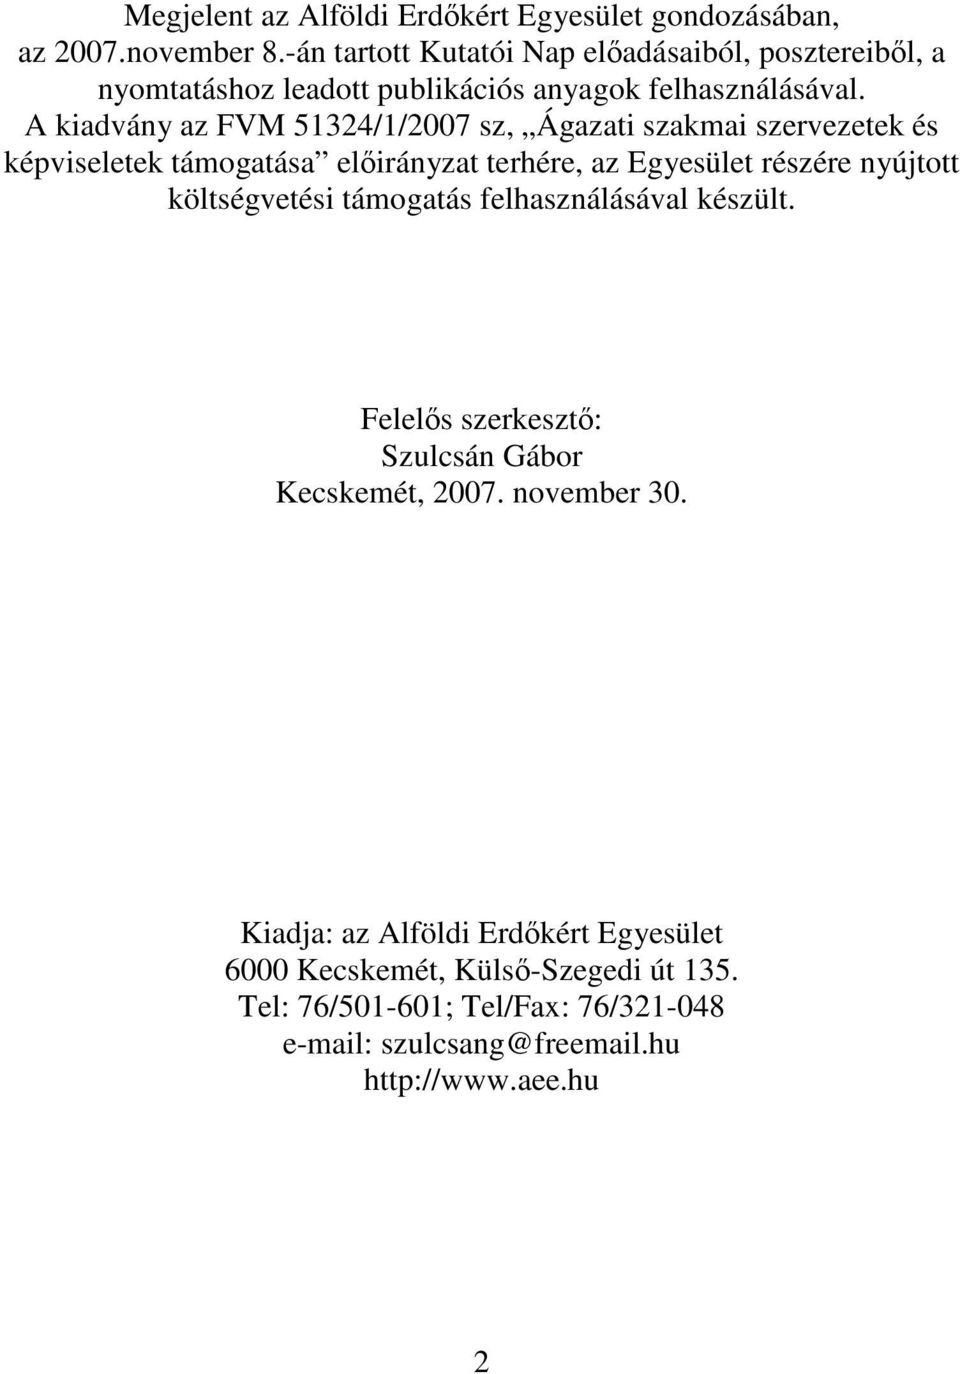 A kiadvány az FVM 51324/1/2007 sz, Ágazati szakmai szervezetek és képviseletek támogatása elıirányzat terhére, az Egyesület részére nyújtott